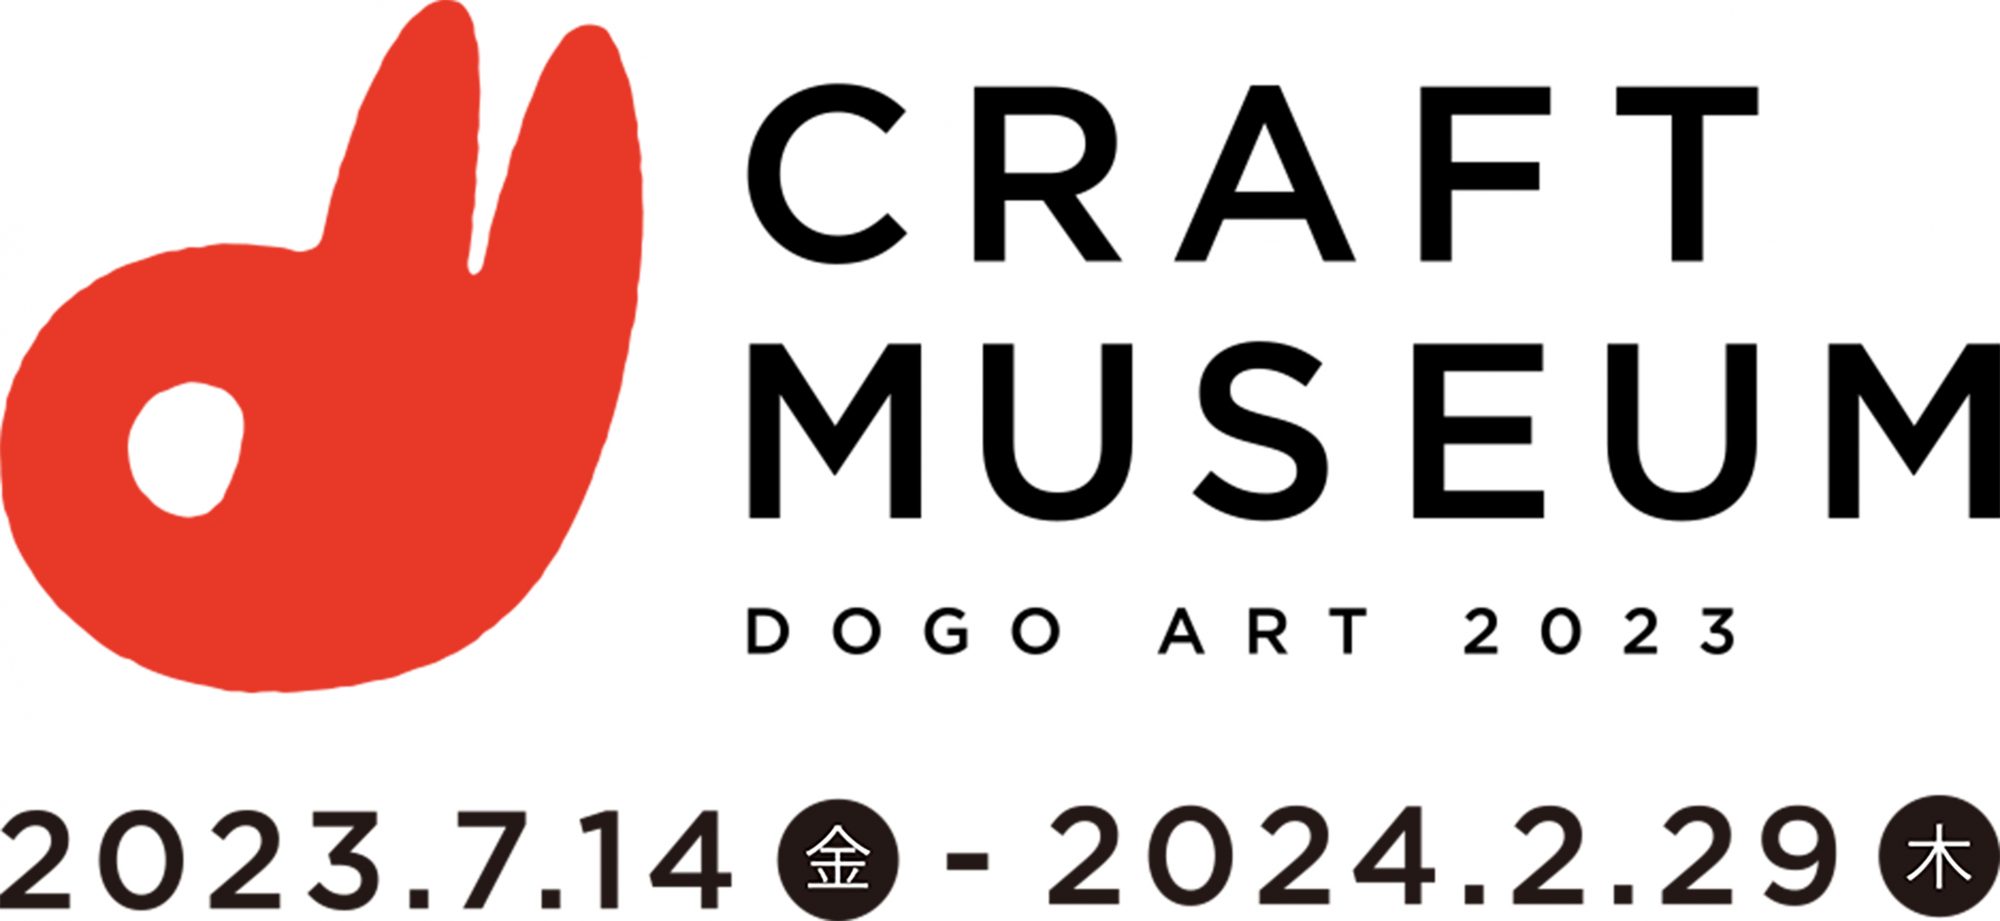 CRAFT MUSEUM / DOGO ART 2023 取り扱いのお知らせ » 白青 | Shiro Ao